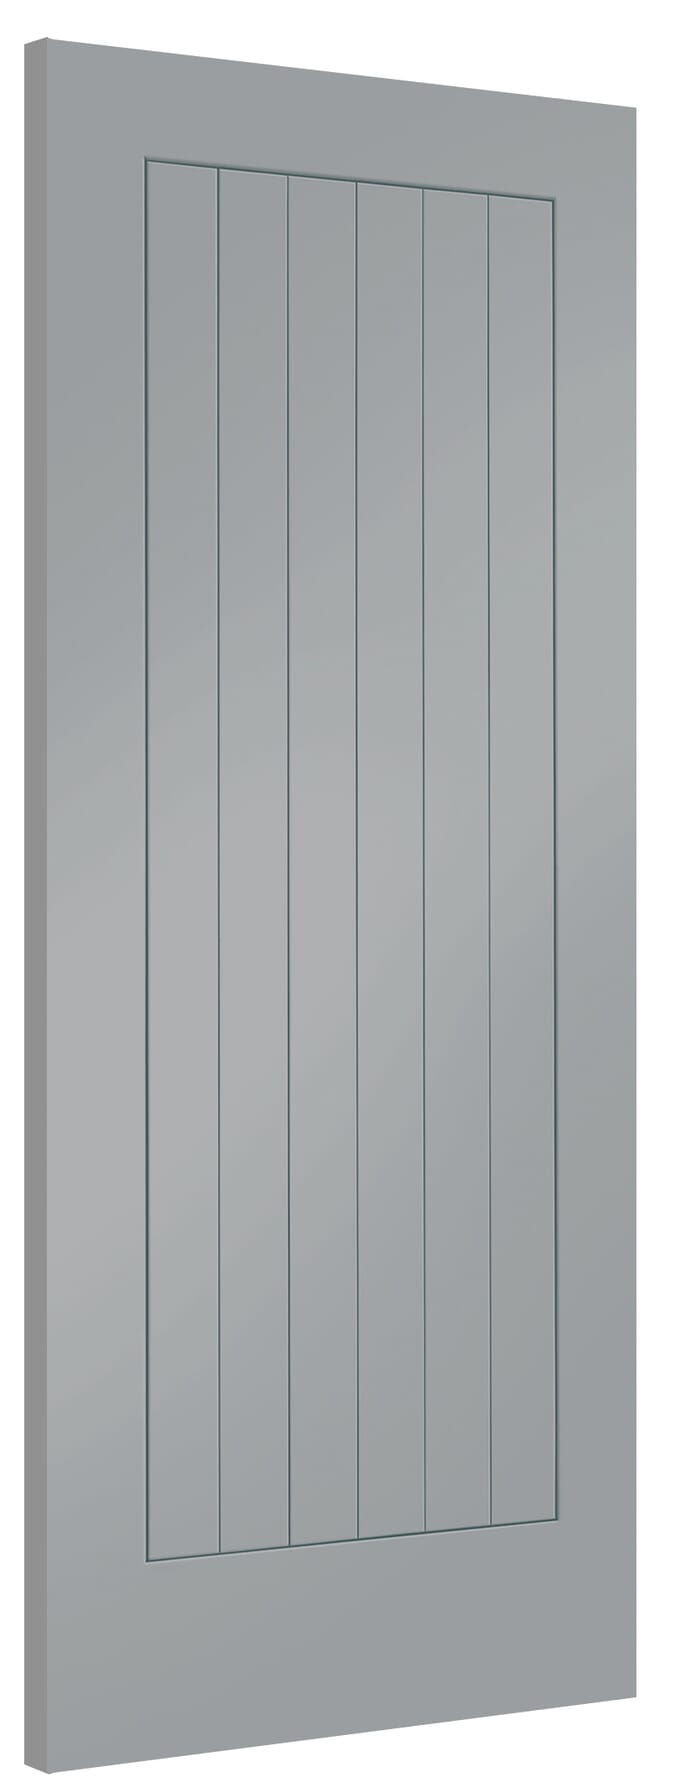 826x2040x40mm Suffolk Storm Grey Internal Doors